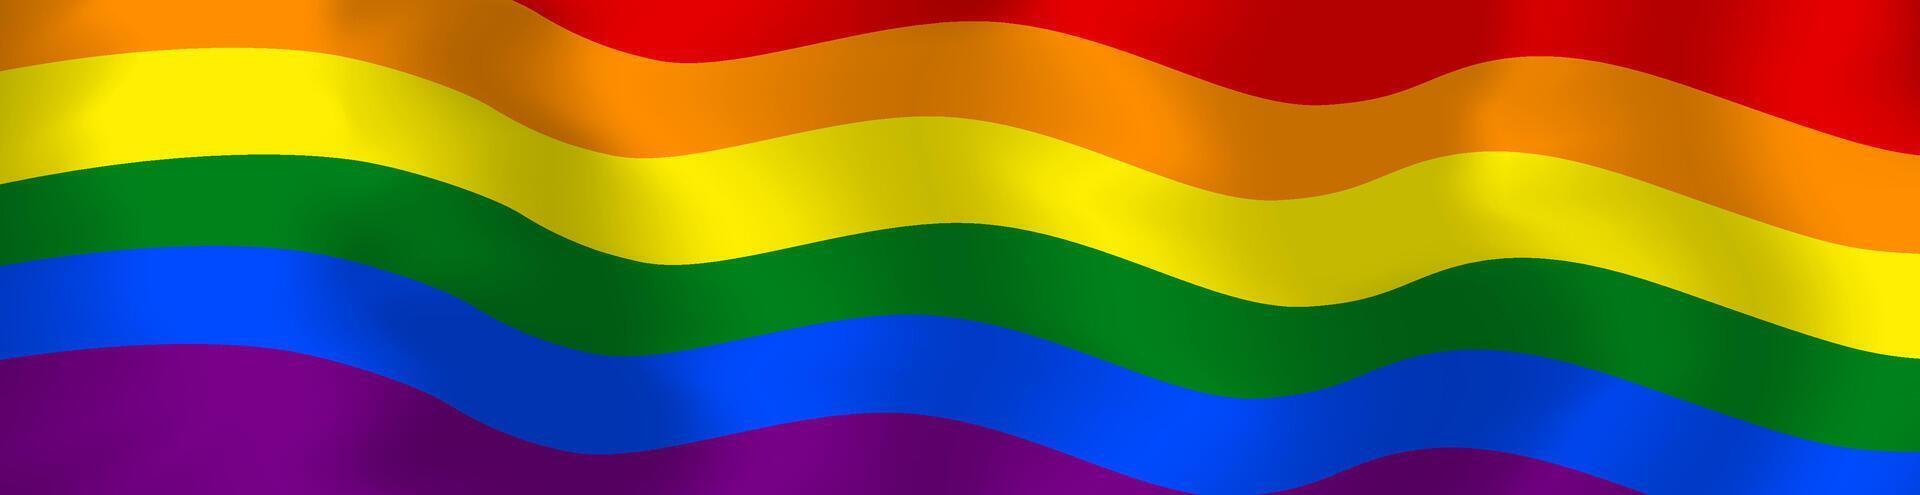 lgbt bandera. lgbtq arco iris bandera antecedentes. vector ilustración de sexual minorías símbolo en seis vistoso colores.